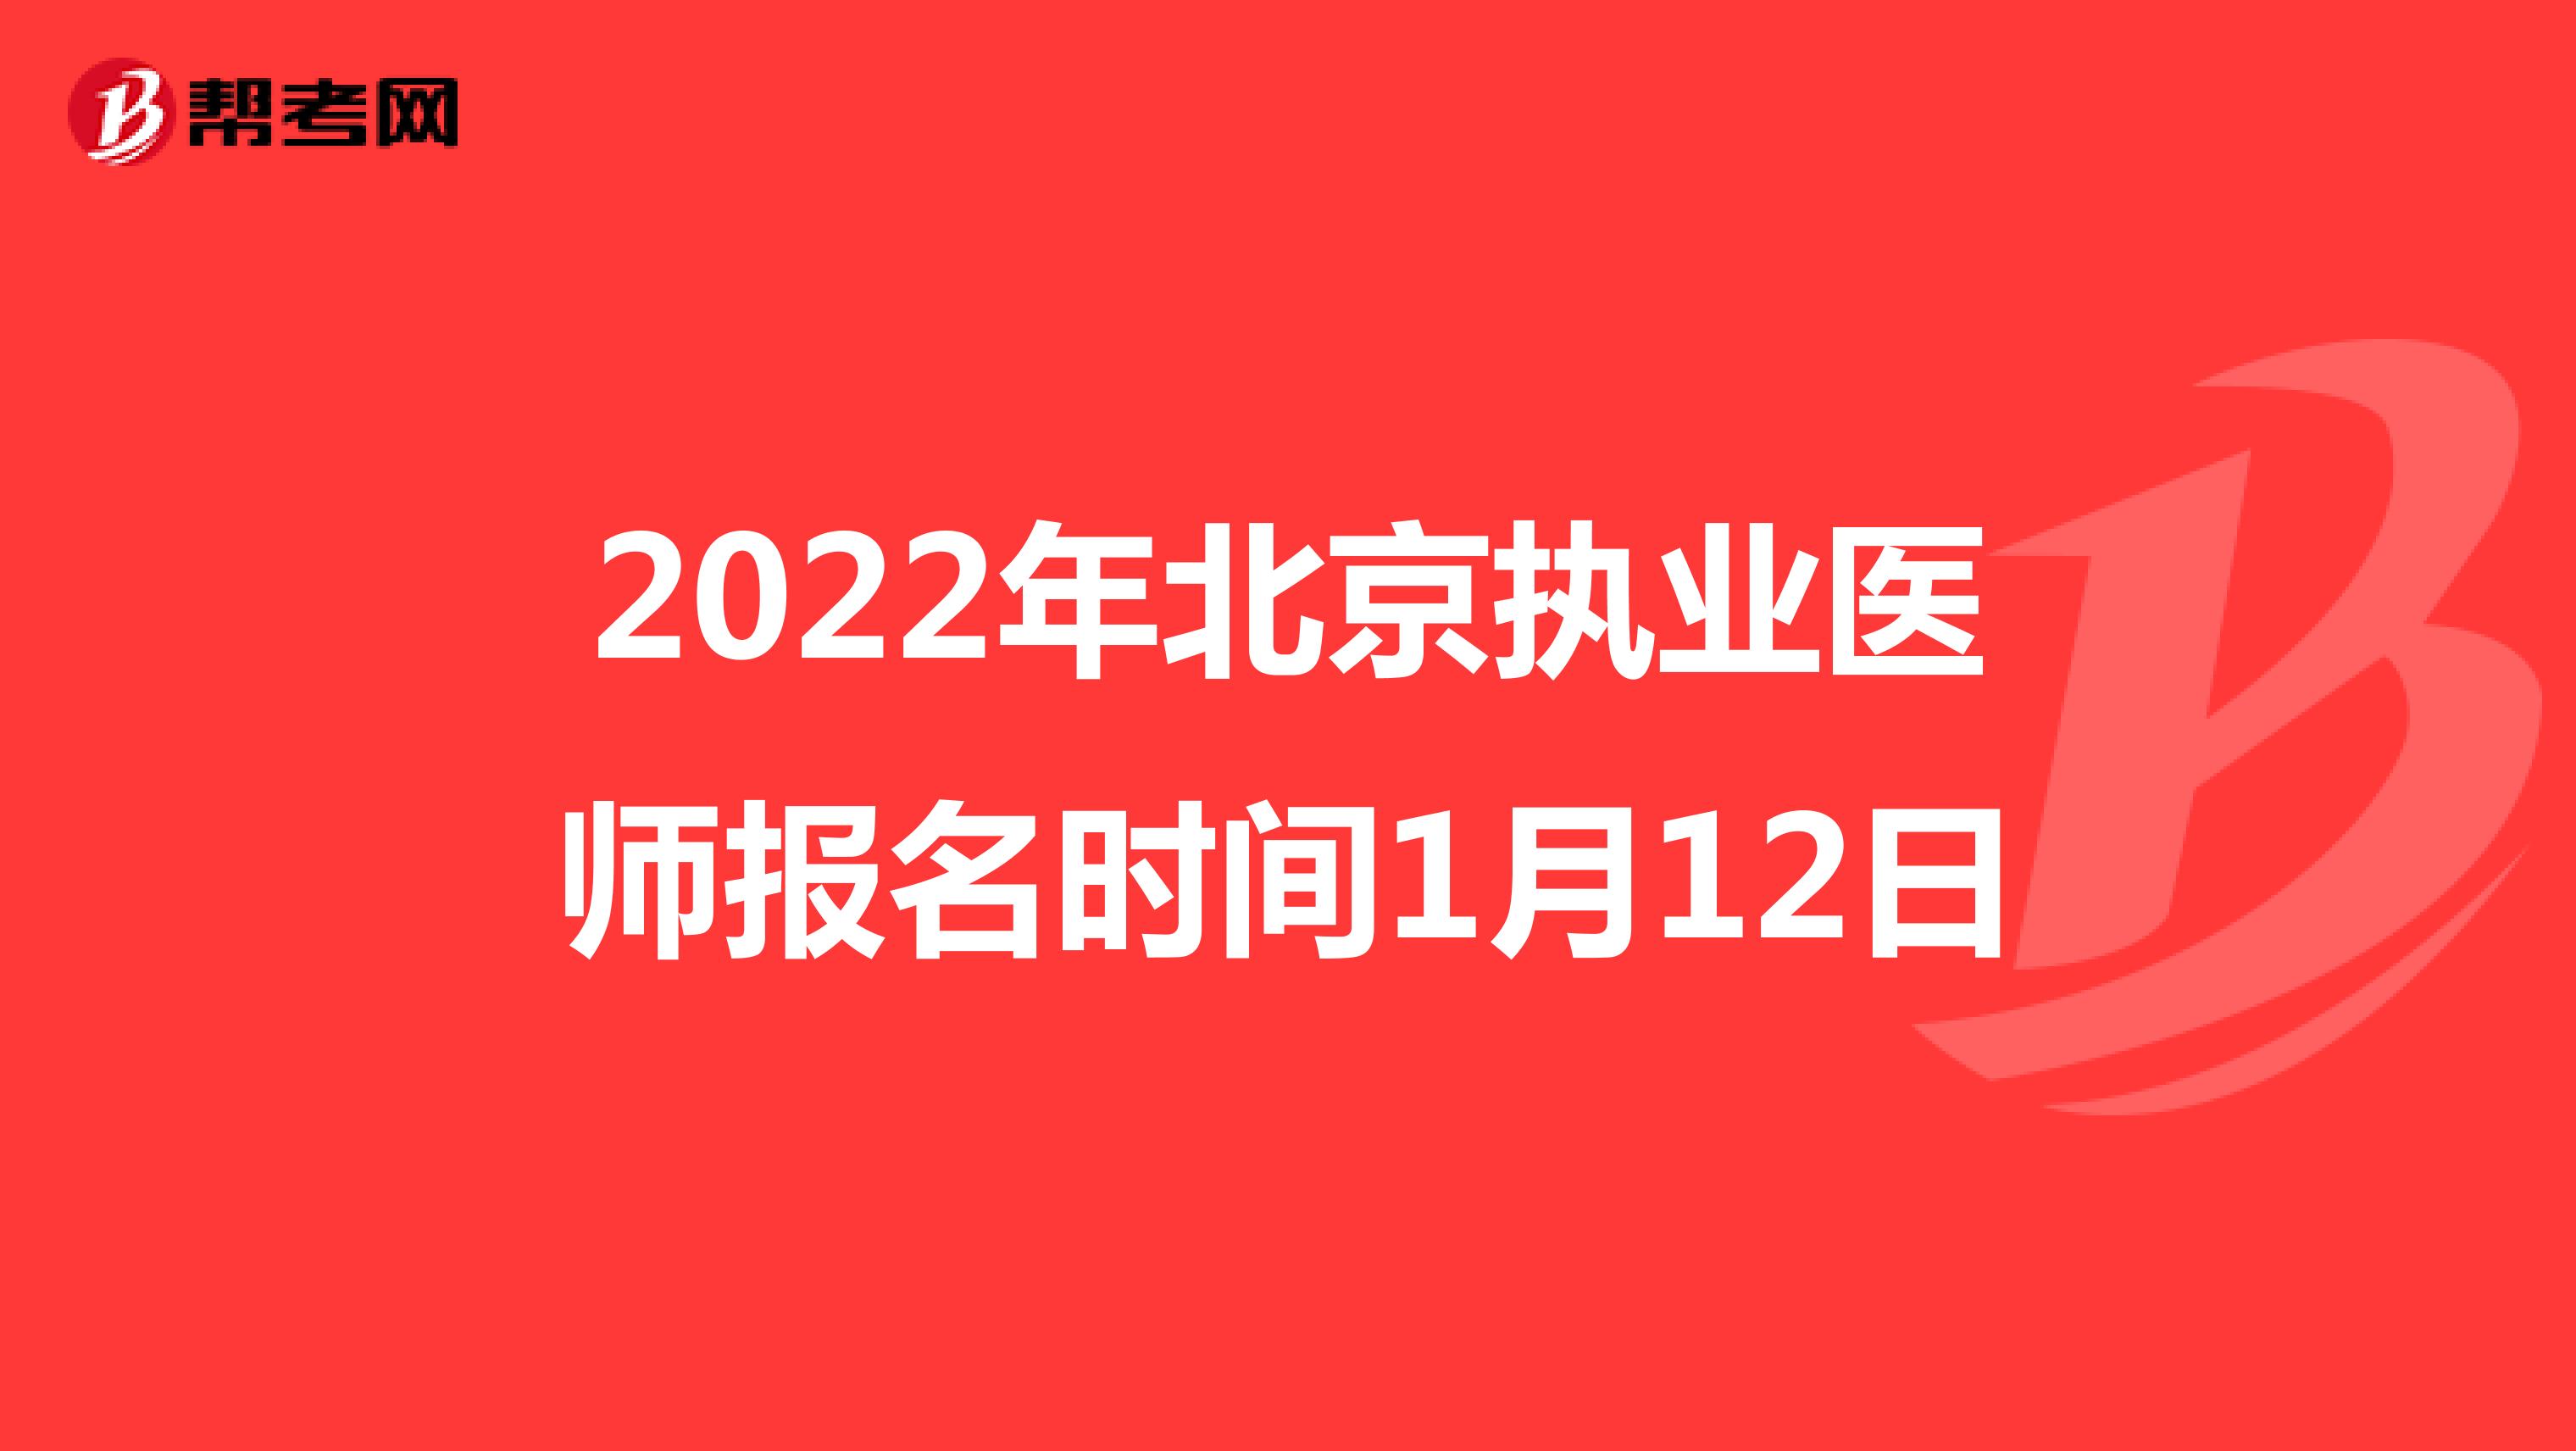 2022年北京执业医师报名时间1月12日